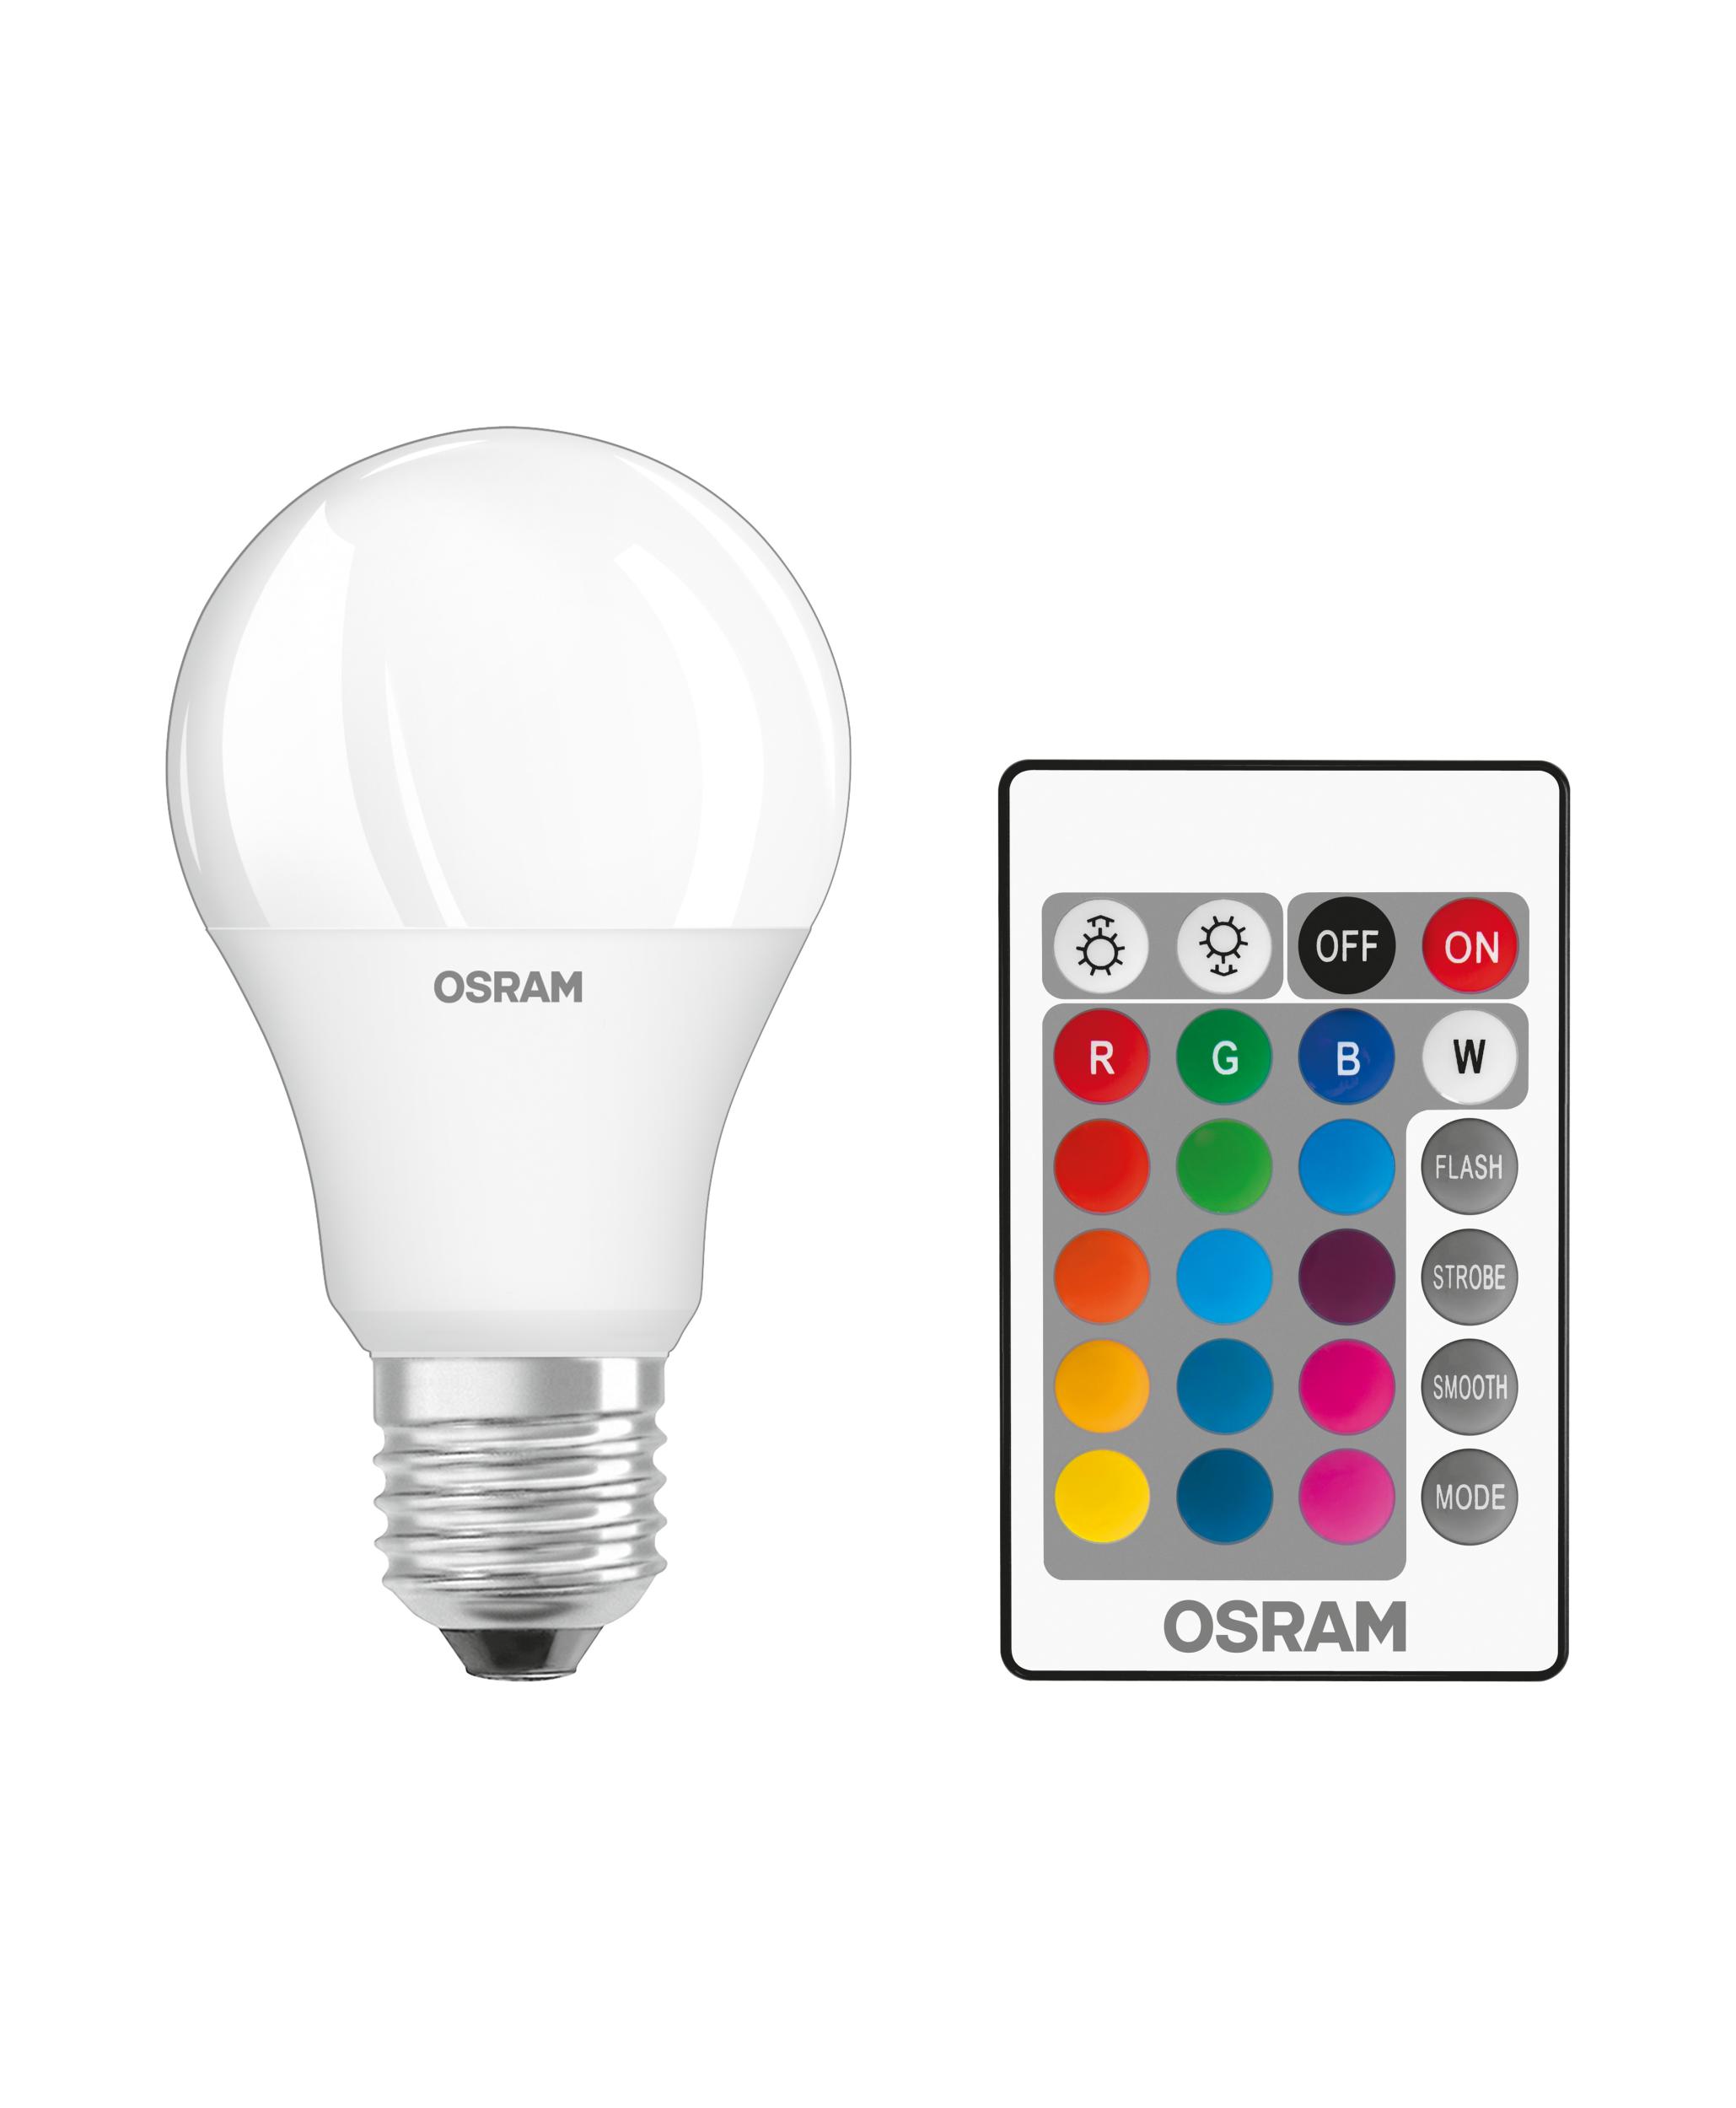 Osram LED Lampe Star mit Remote Control, 9 Watt, E27, warmweiß,RGB dimmbar